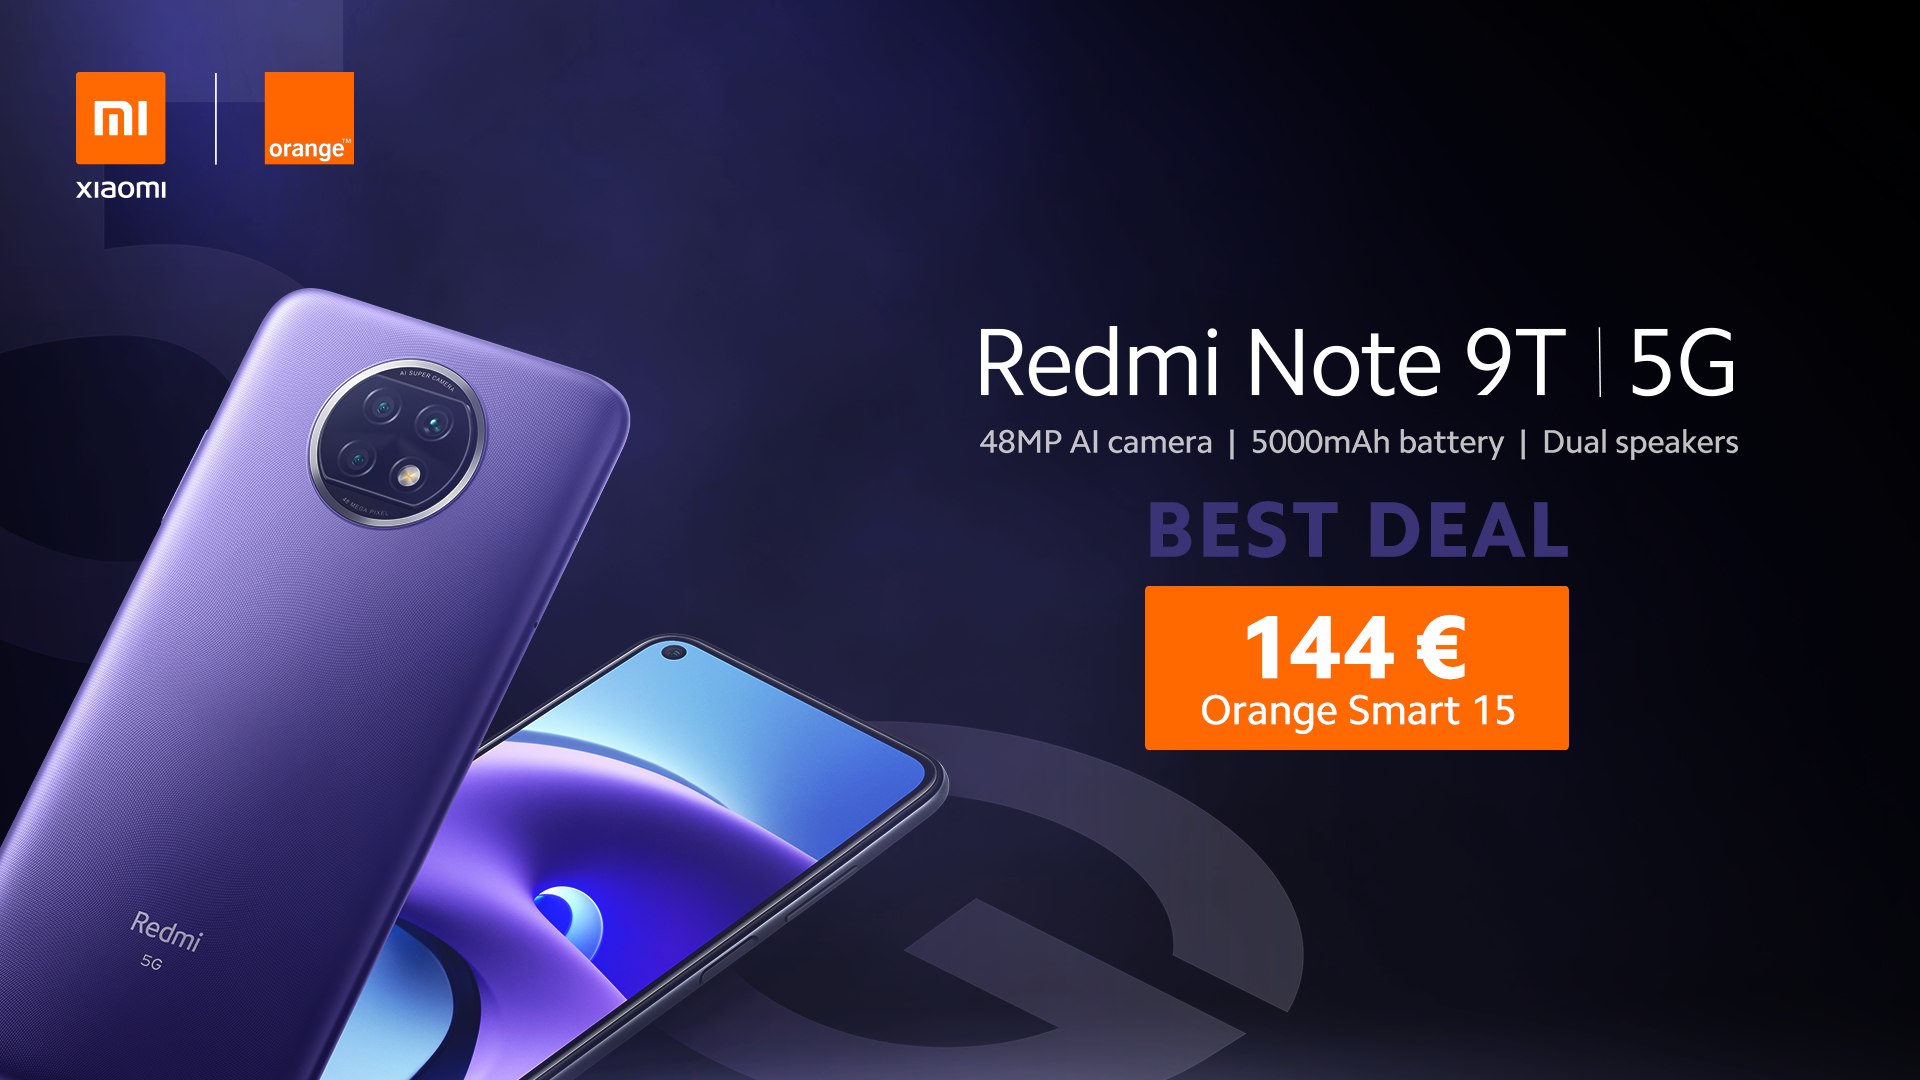 Redmi Note 9T - Best Deal Orange